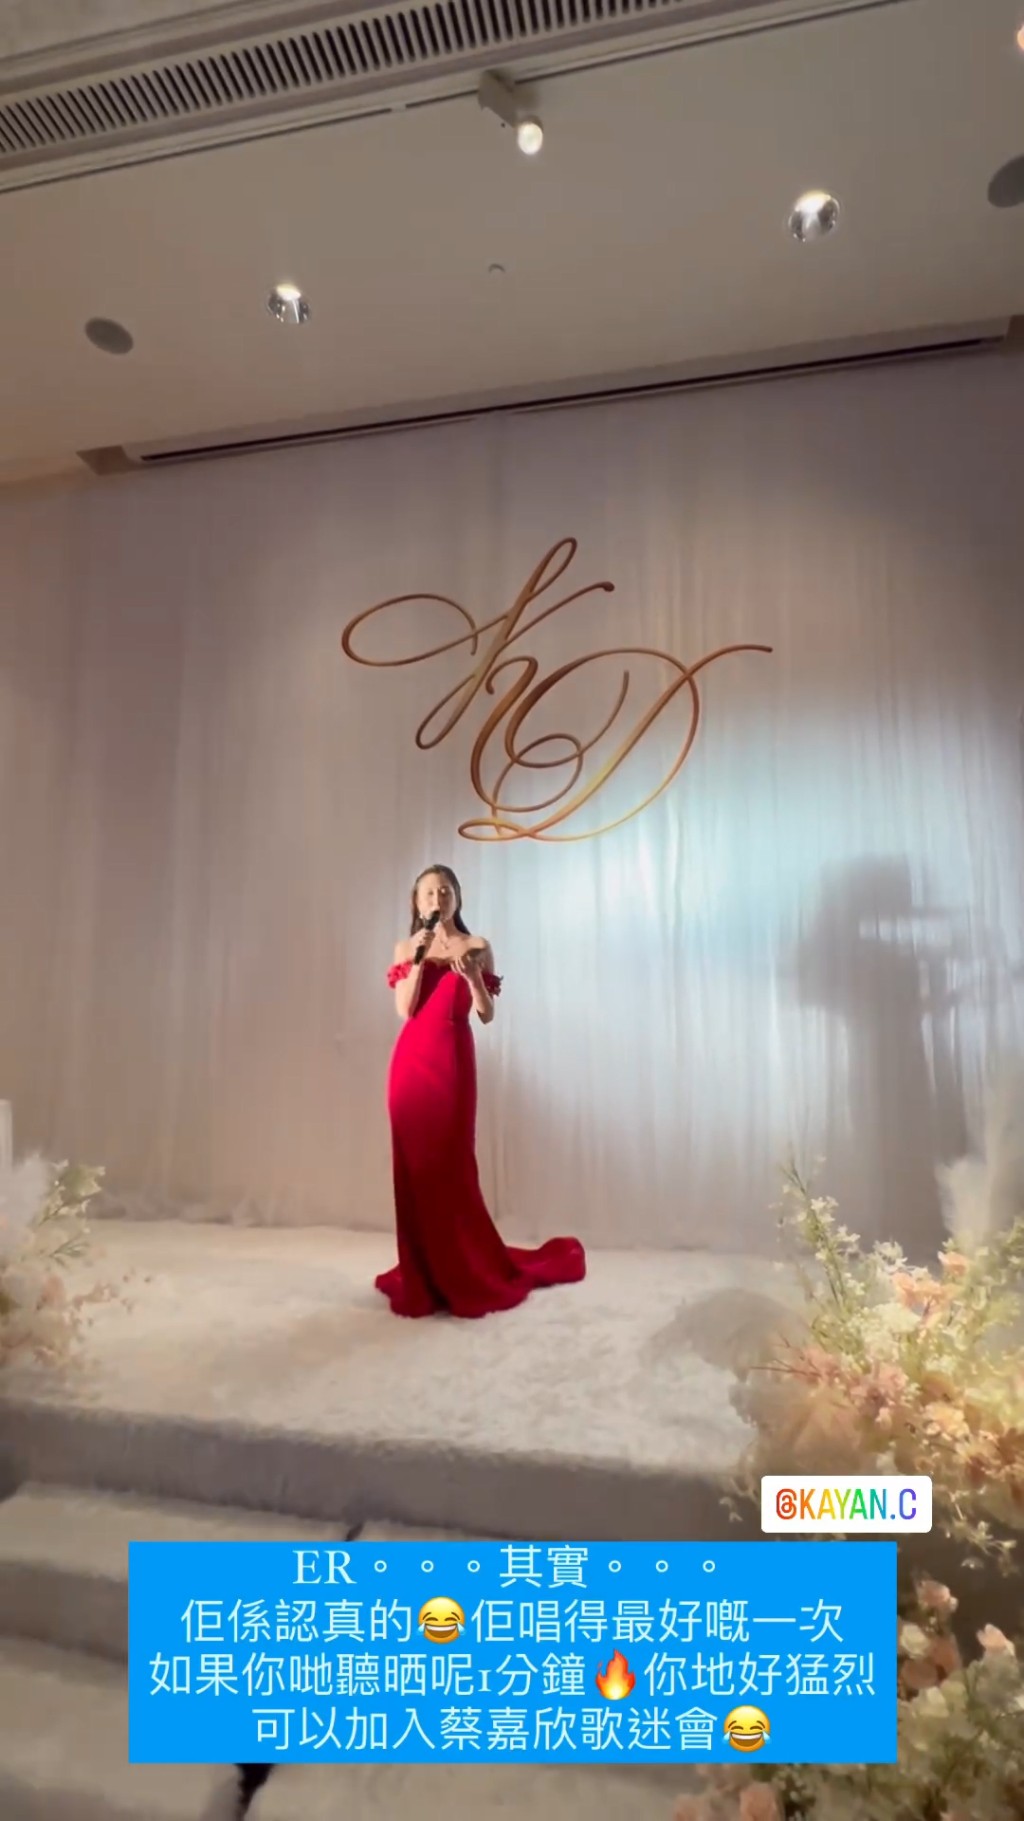 蔡嘉欣在婚宴前夕曾透露会献唱《只要和你在一起》。